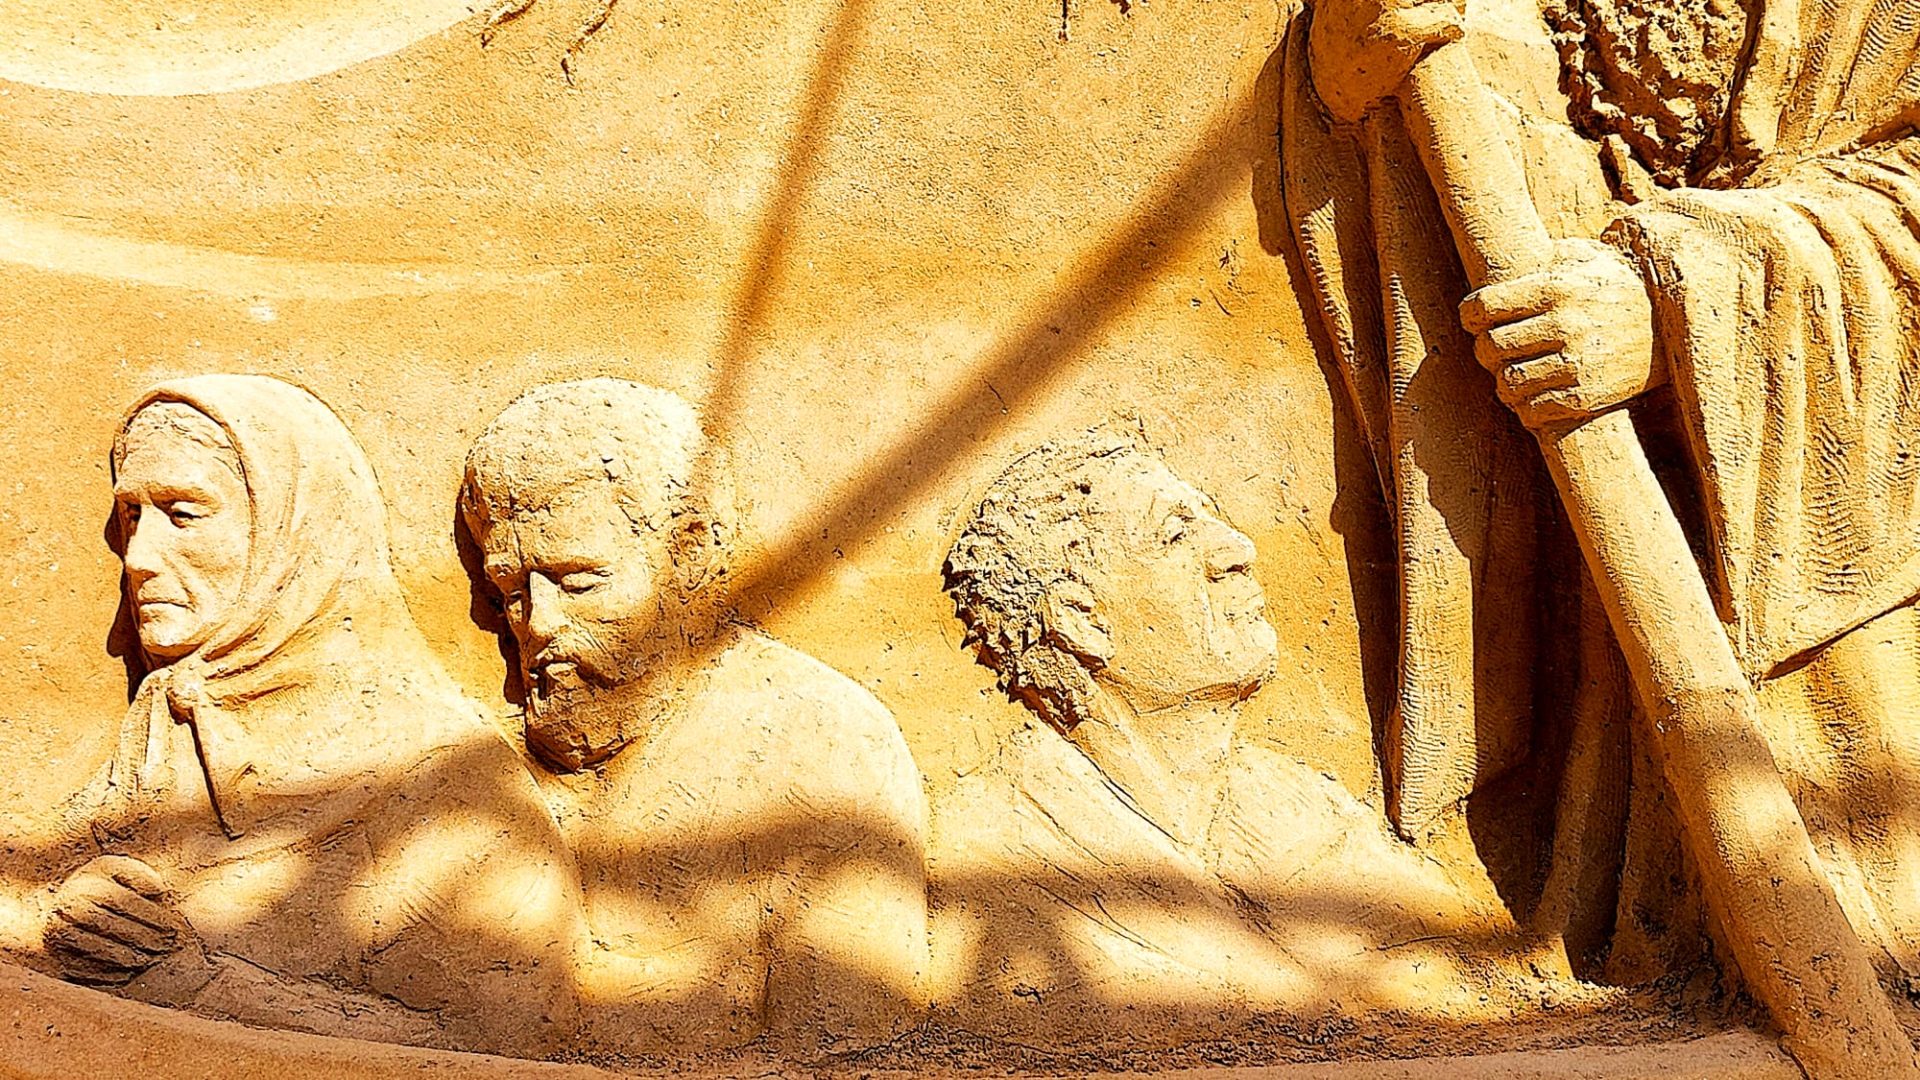 Sandskulpturen-Ausstellung Jesolo 2022 - Bild 2